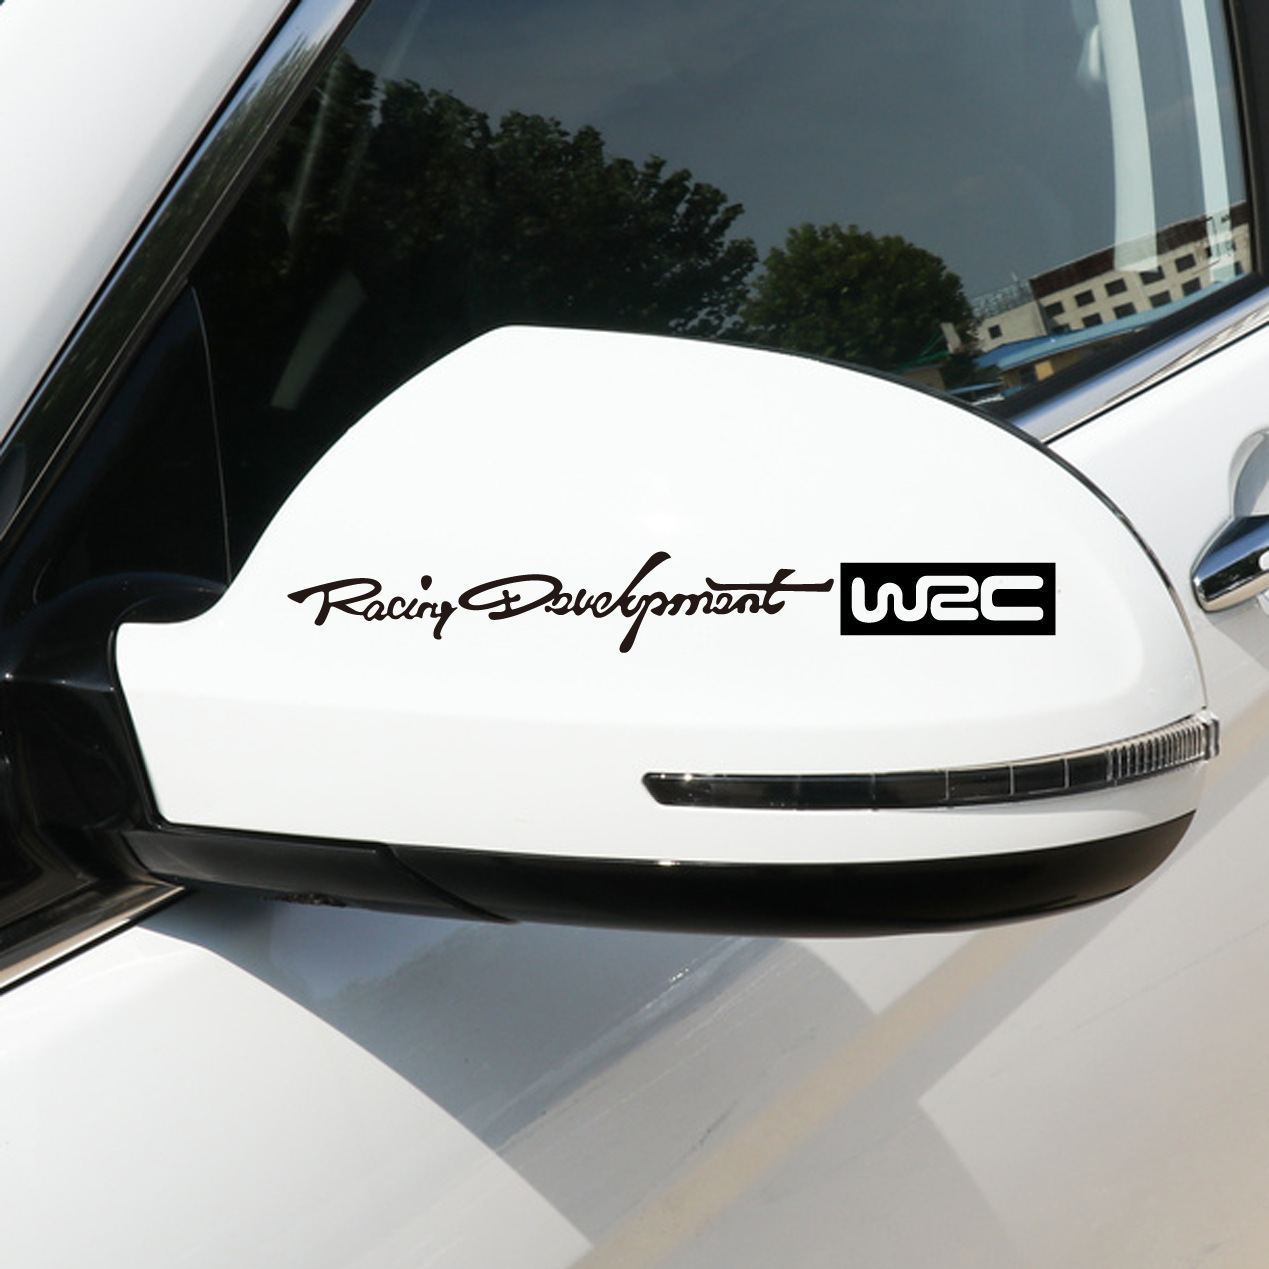 Tem dán gương ô tô WRC racing development